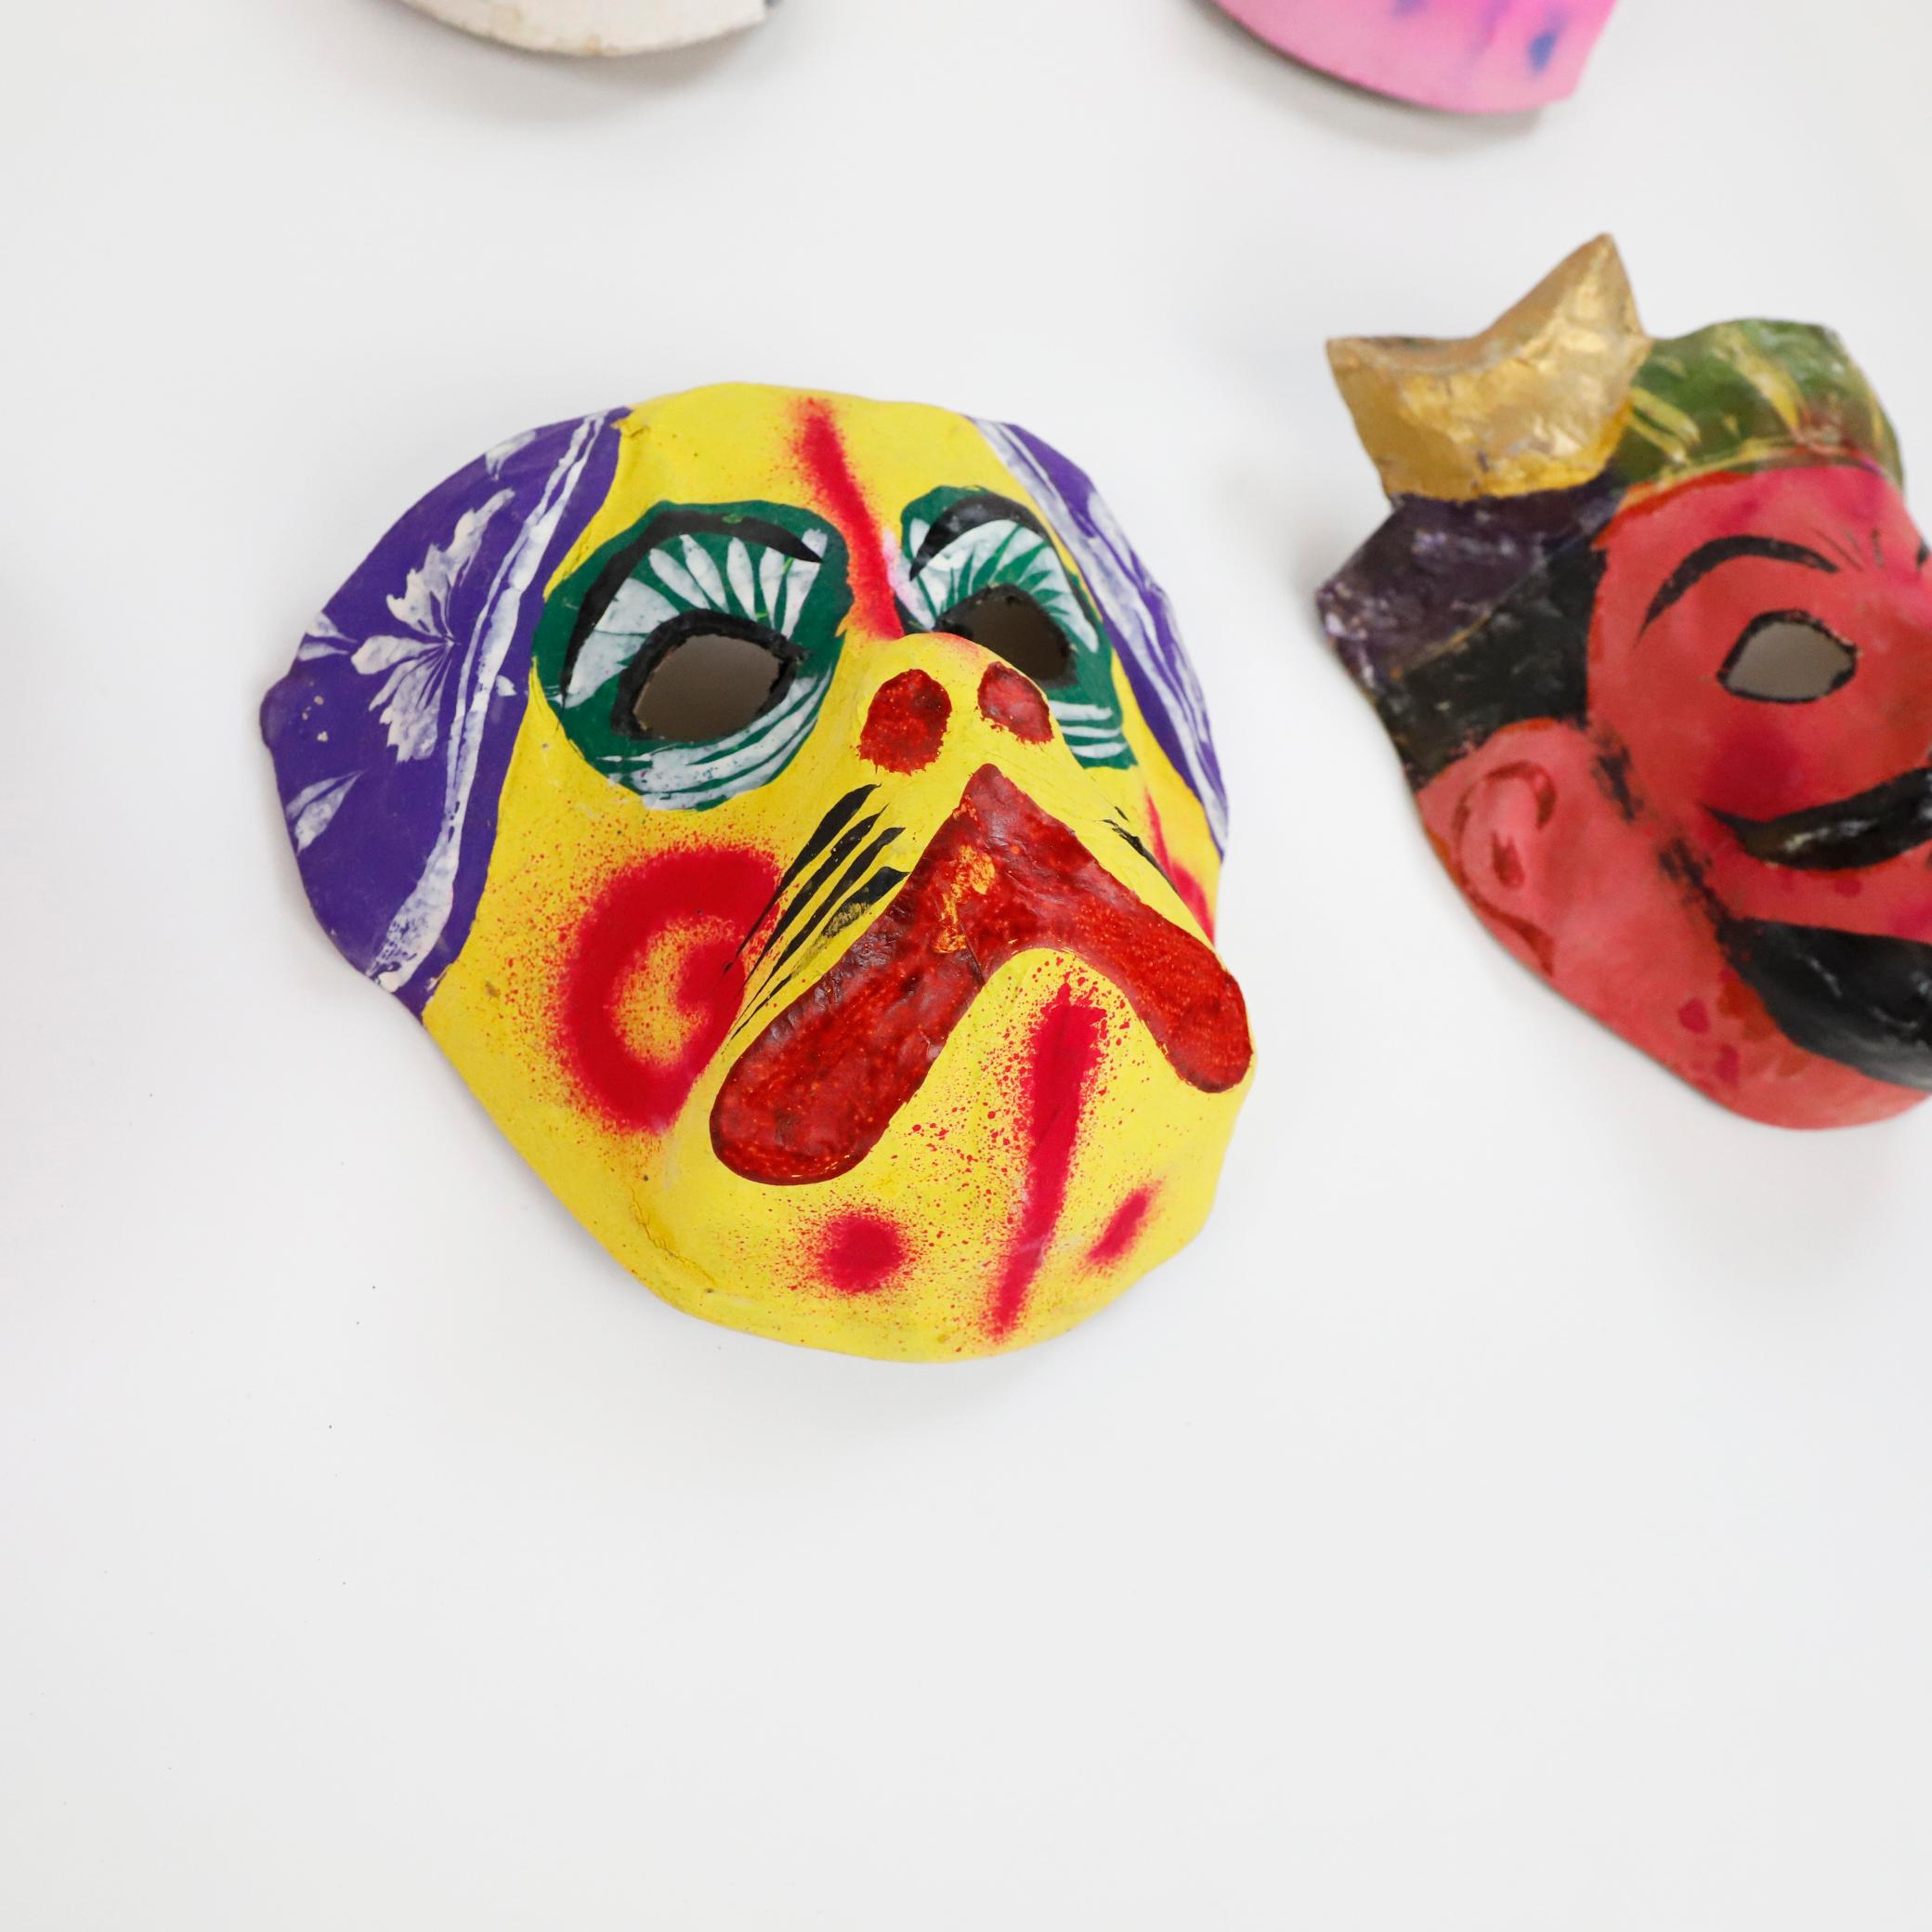 Um 1960. Wir bieten dieses antike Set von 8 mexikanischen Pappmaché-Masken an, die zu 100% handgefertigt und mit Anilin (natürlichen Pigmenten) bemalt sind.